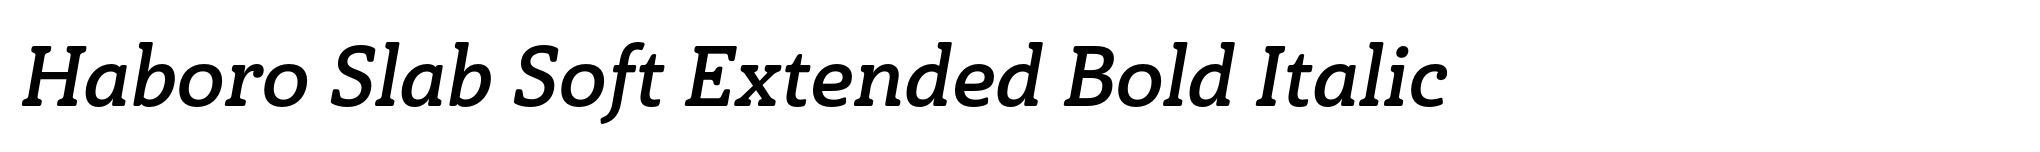 Haboro Slab Soft Extended Bold Italic image